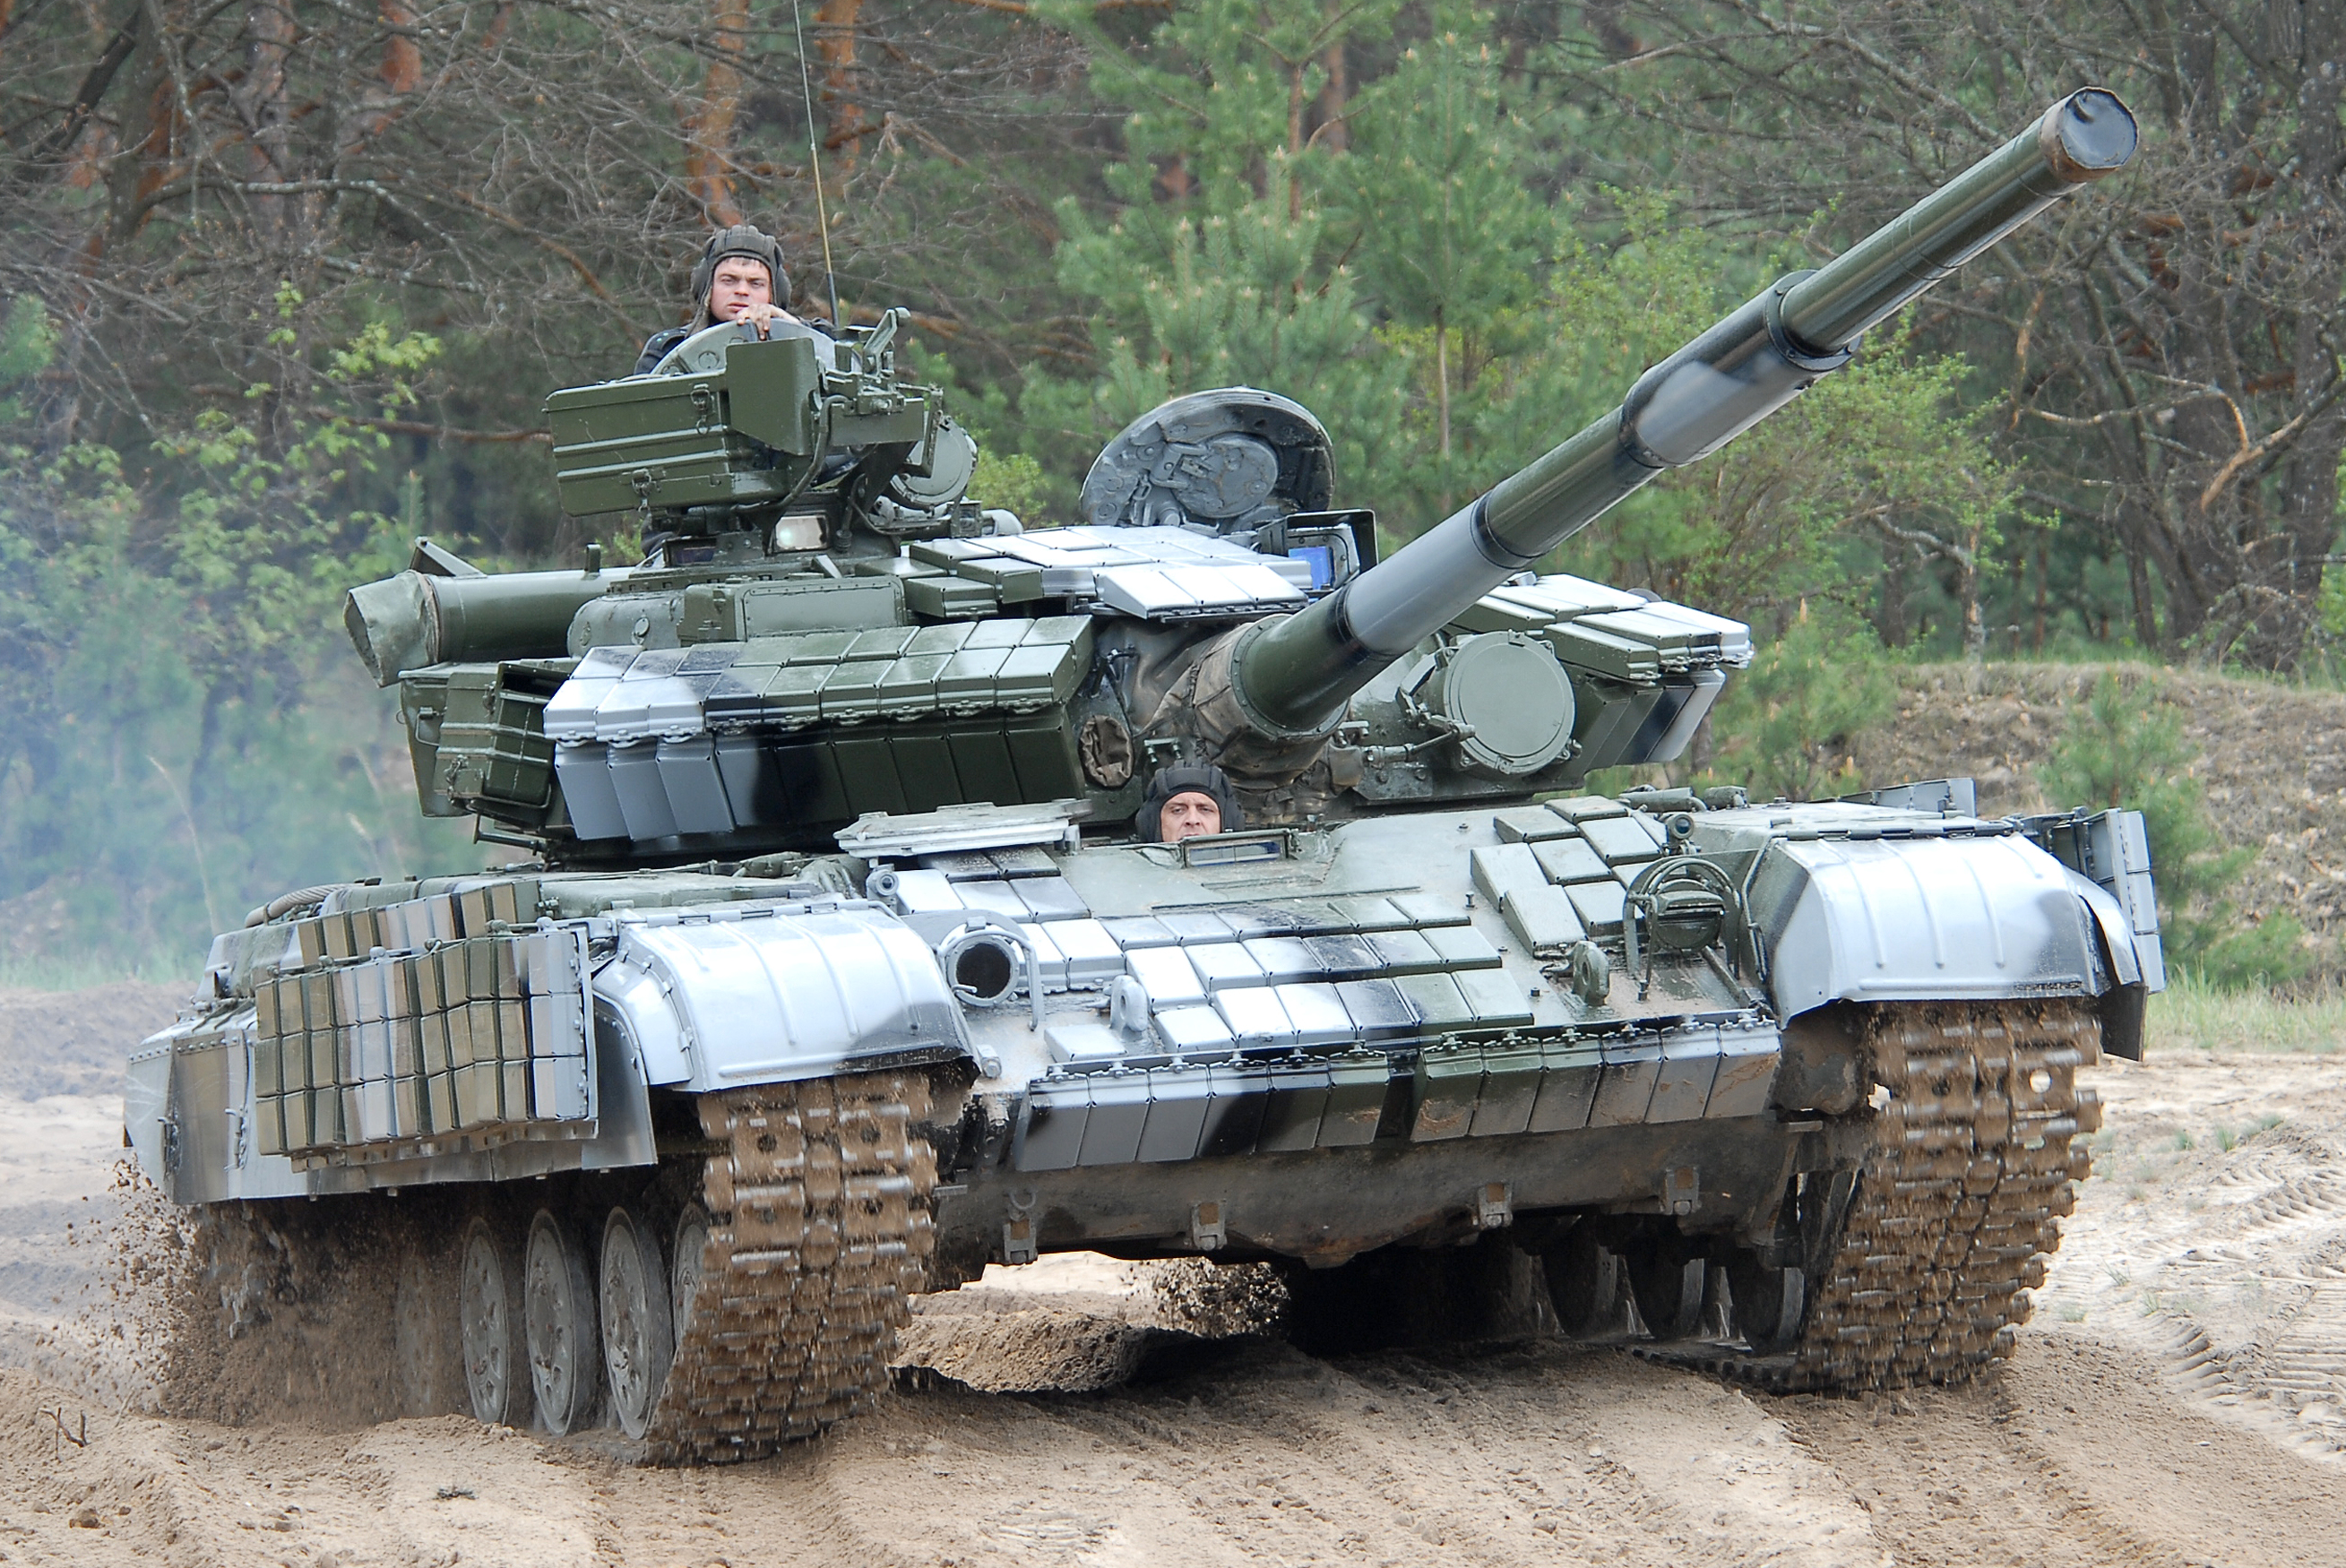 Підрозділи Нацгвардії на Донбасі поповняться модернізованими танками Т-64. Харківське держпідприємство «Завод ім. Малишева», яке виробляє бронетехніку в Україні, відвантажило партію вітчизняних танків Т-64 БВ-1 для потреб Національної гвардії України.